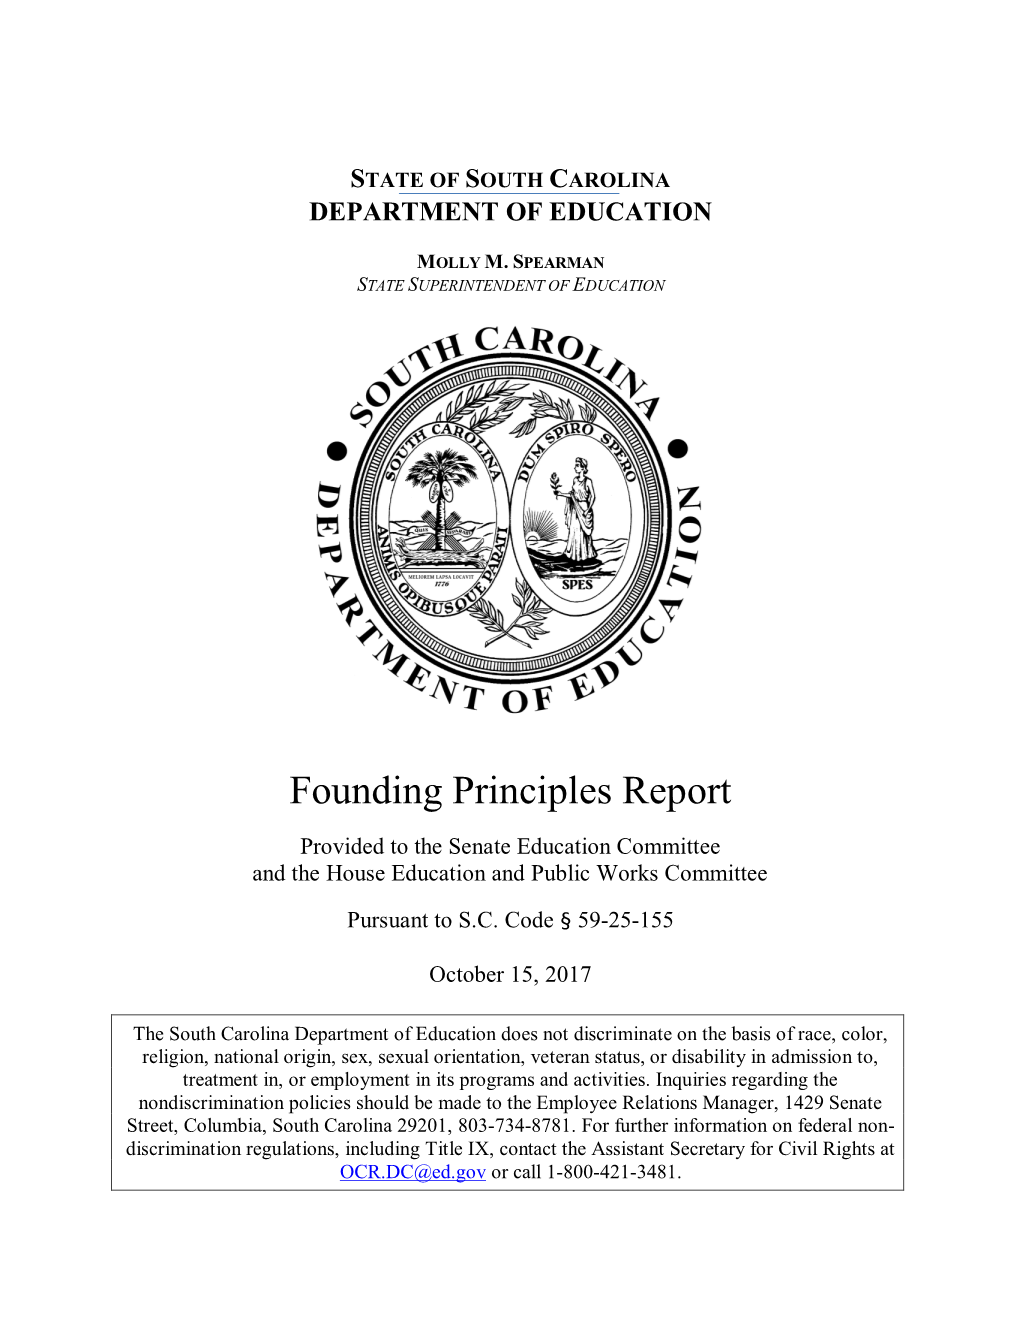 Founding Principles Report